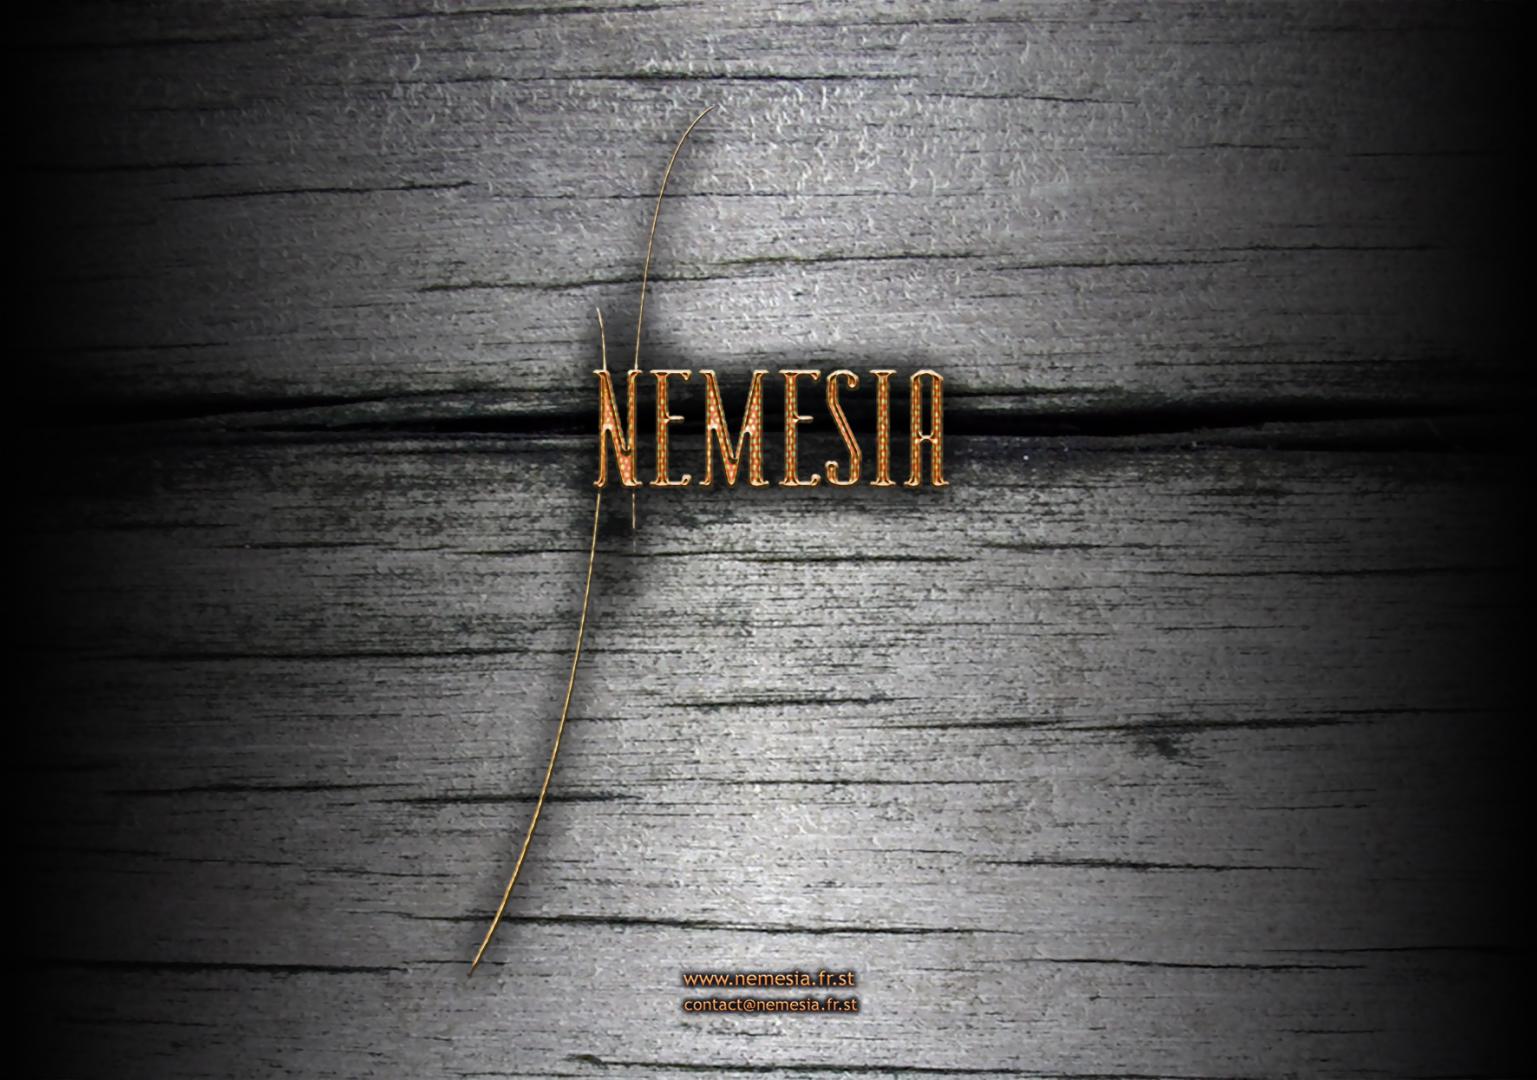 Nemesia - Flyer Promo - front